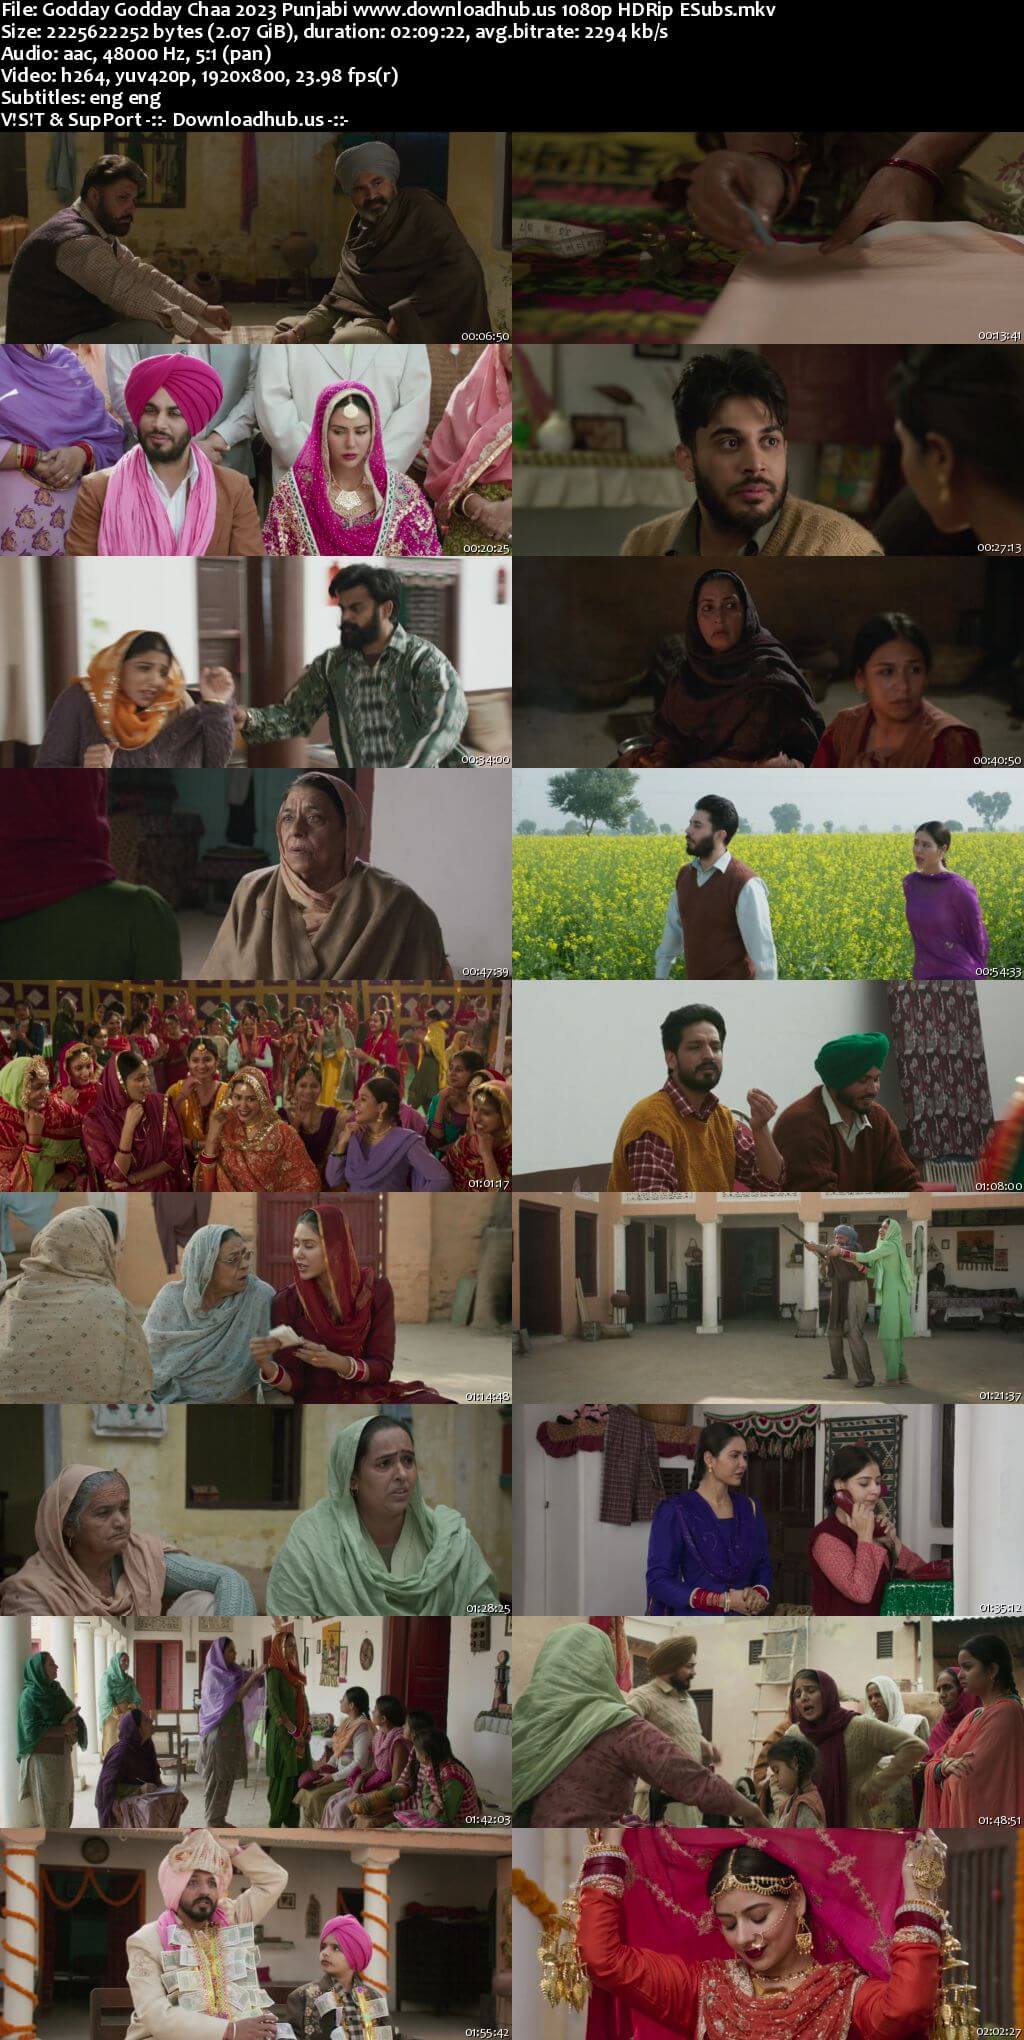 Godday Godday Chaa 2023 Punjabi Movie 1080p 720p 480p HDRip ESubs HEVC